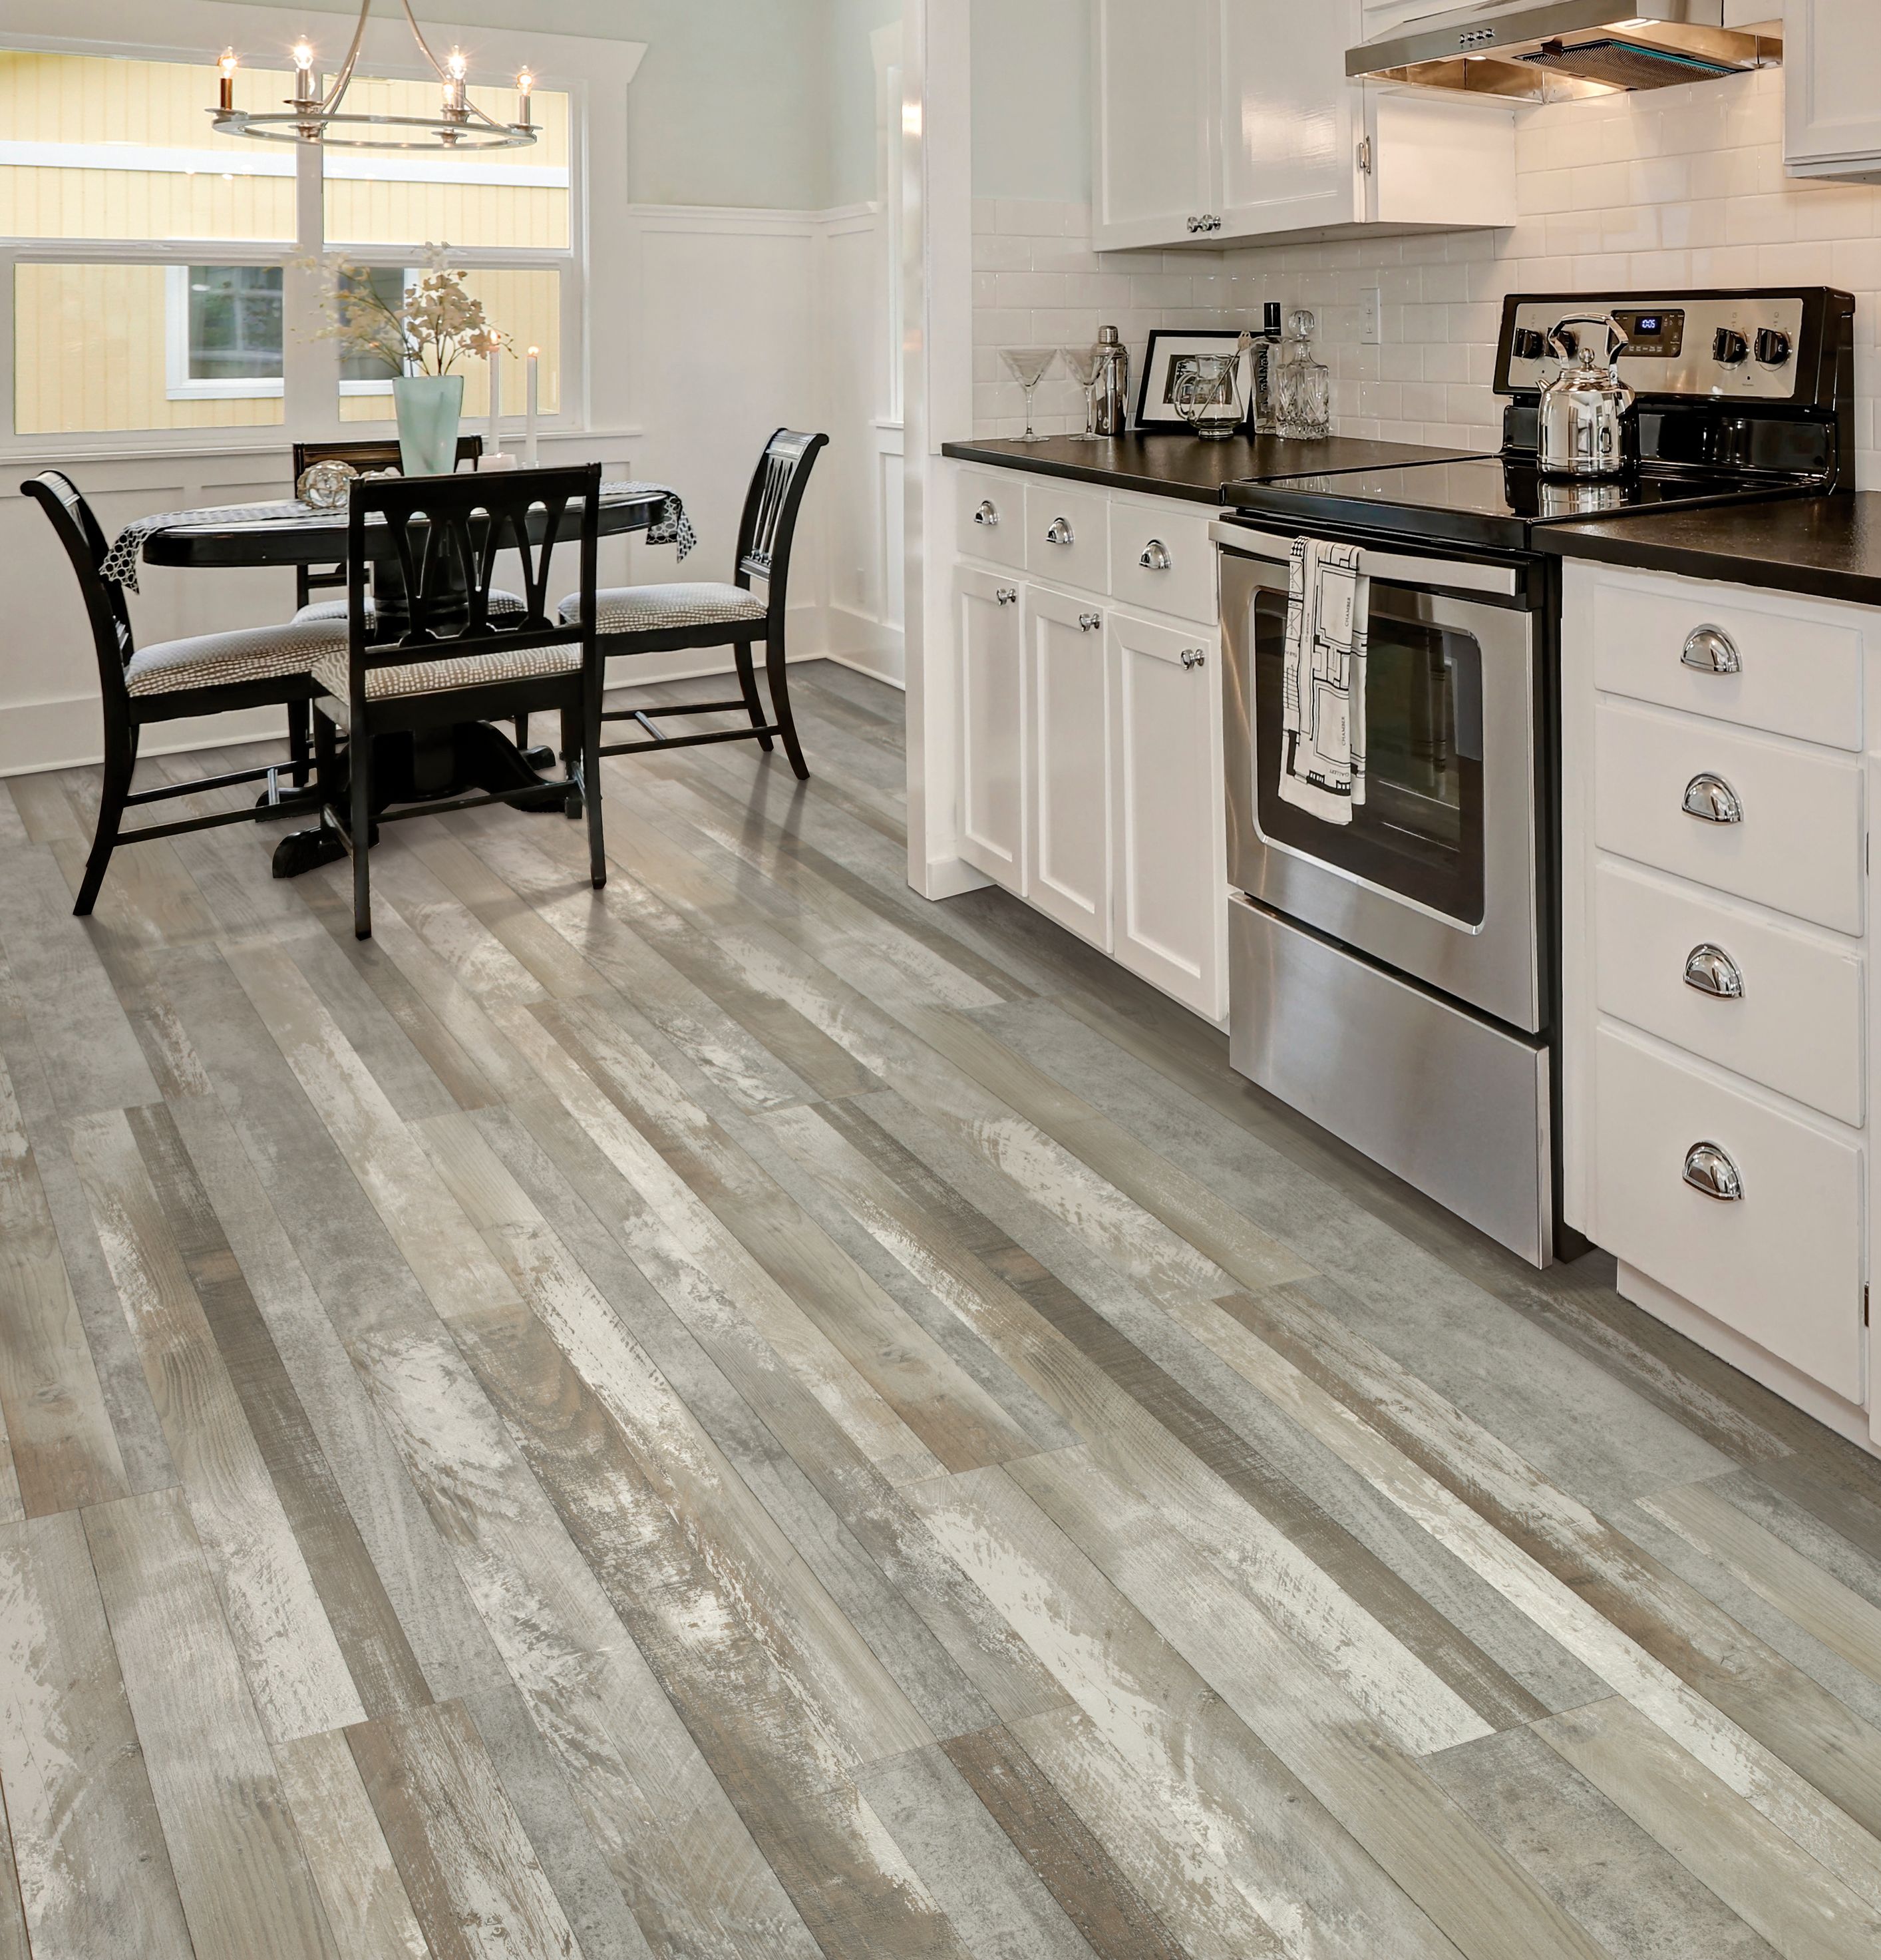 light grey laminate floors in kitchen